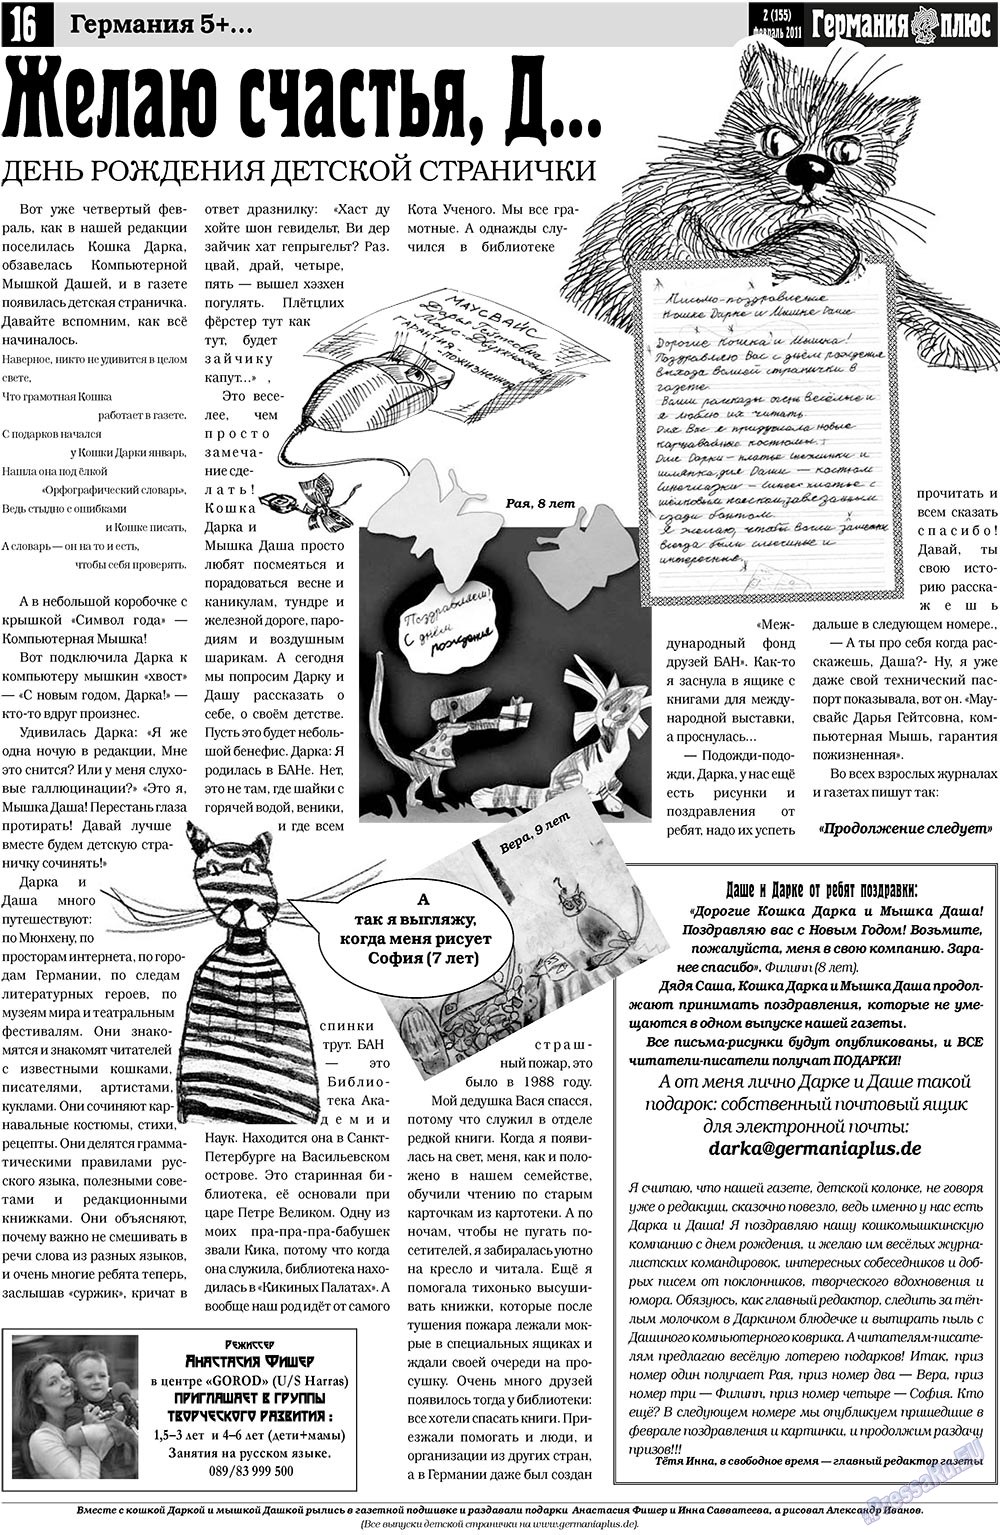 Германия плюс, газета. 2011 №2 стр.16